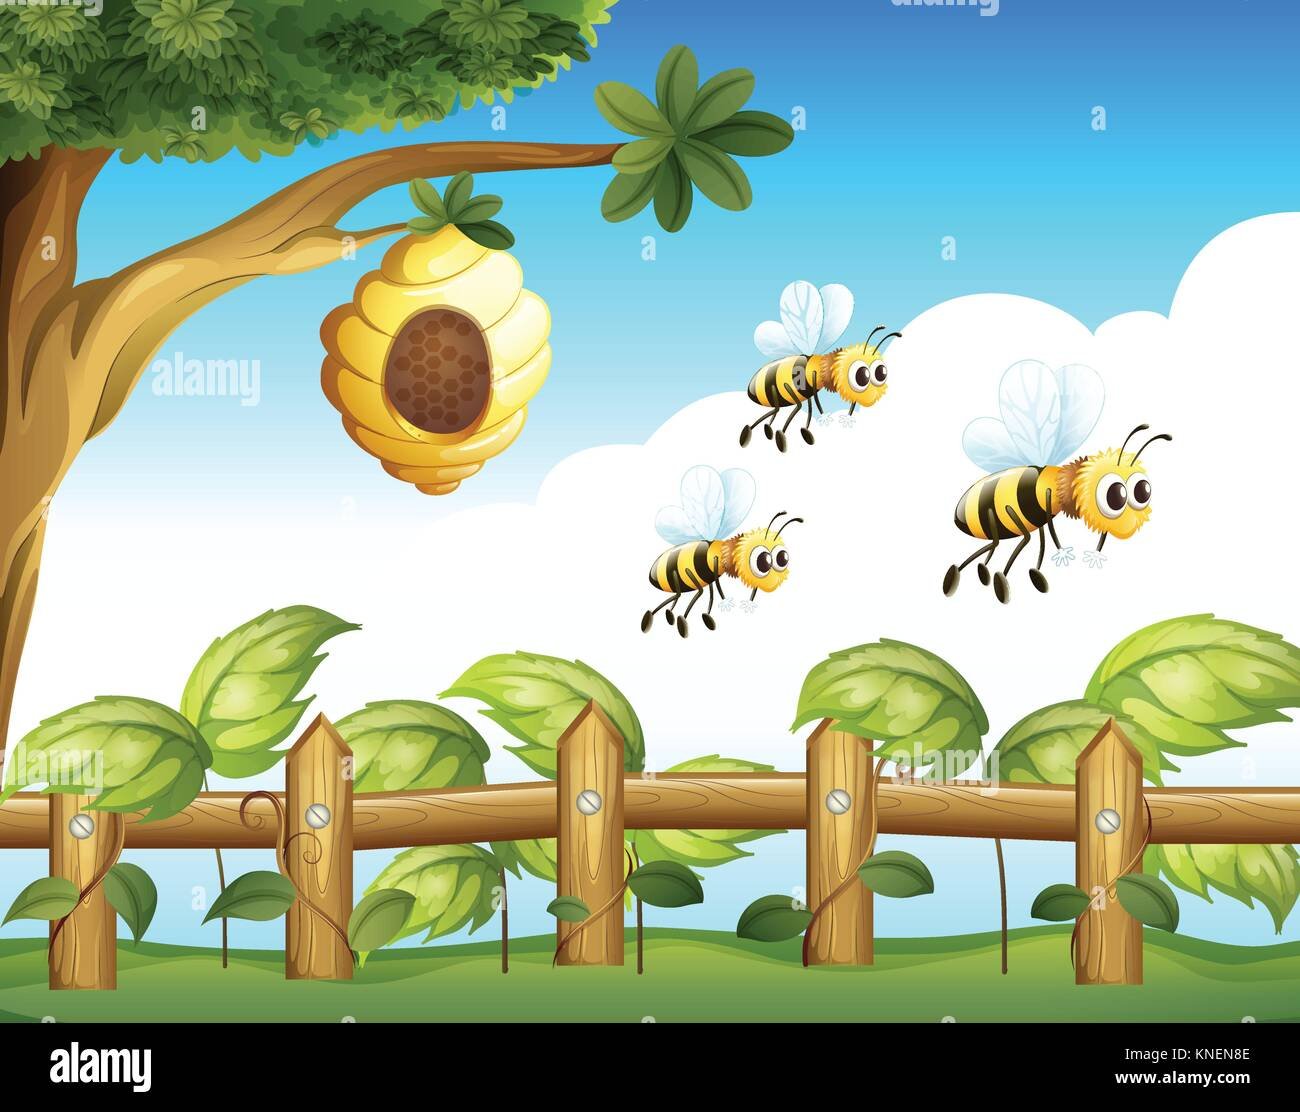 3 пчелы 3 дома. Улей для пчел. Пчелиный улей мультяшный. Улей на дереве для детей. Дерево с ульем мультяшное.